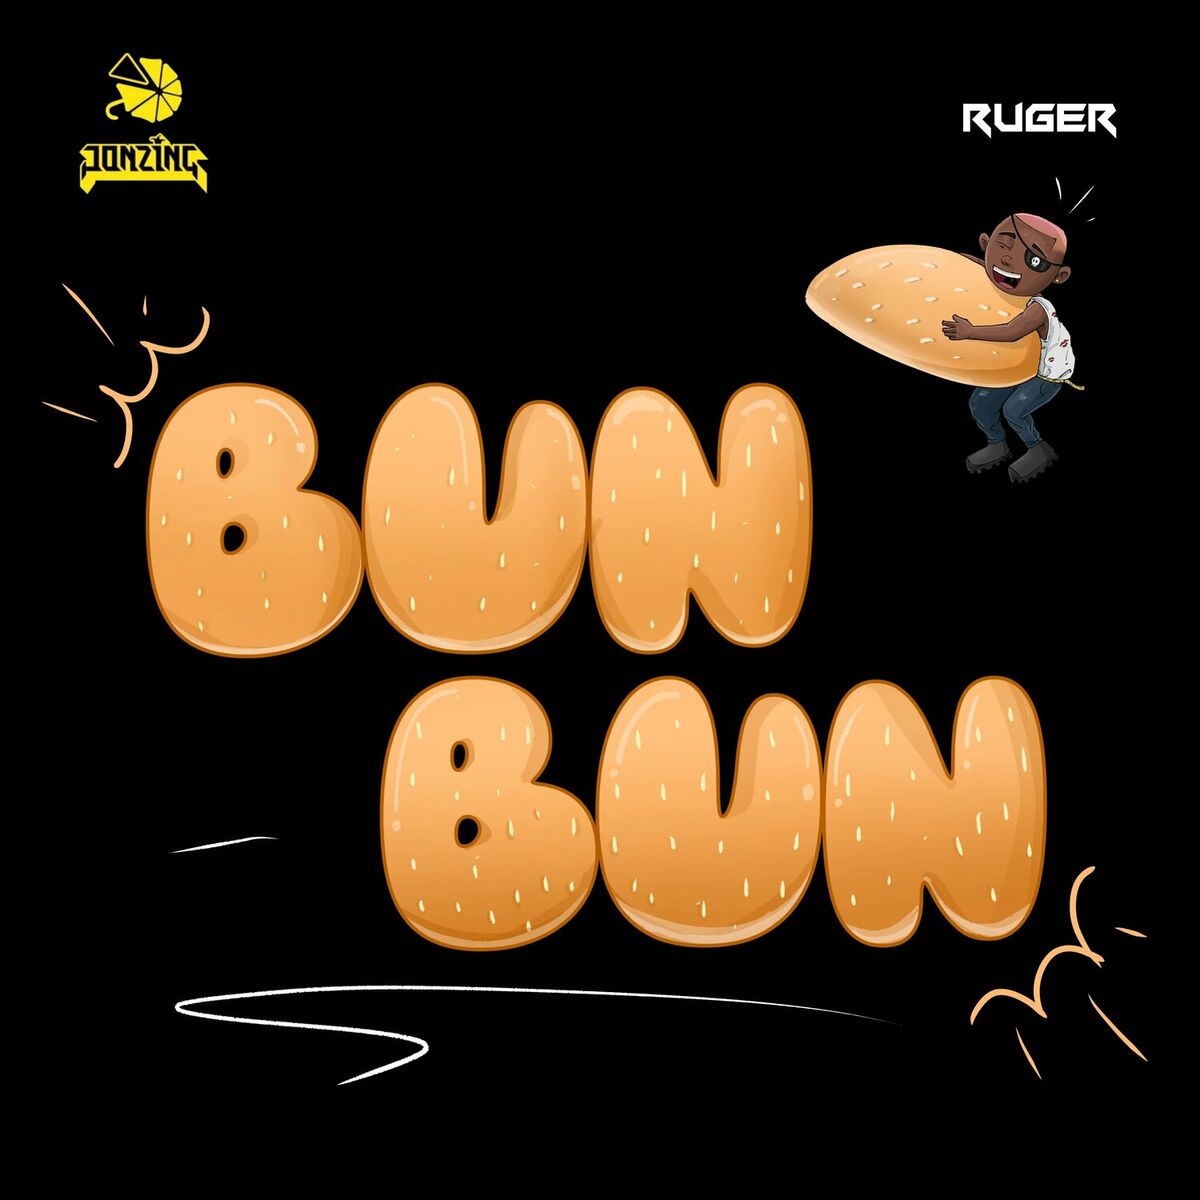 Ruger & Jugglerz – Bun Bun